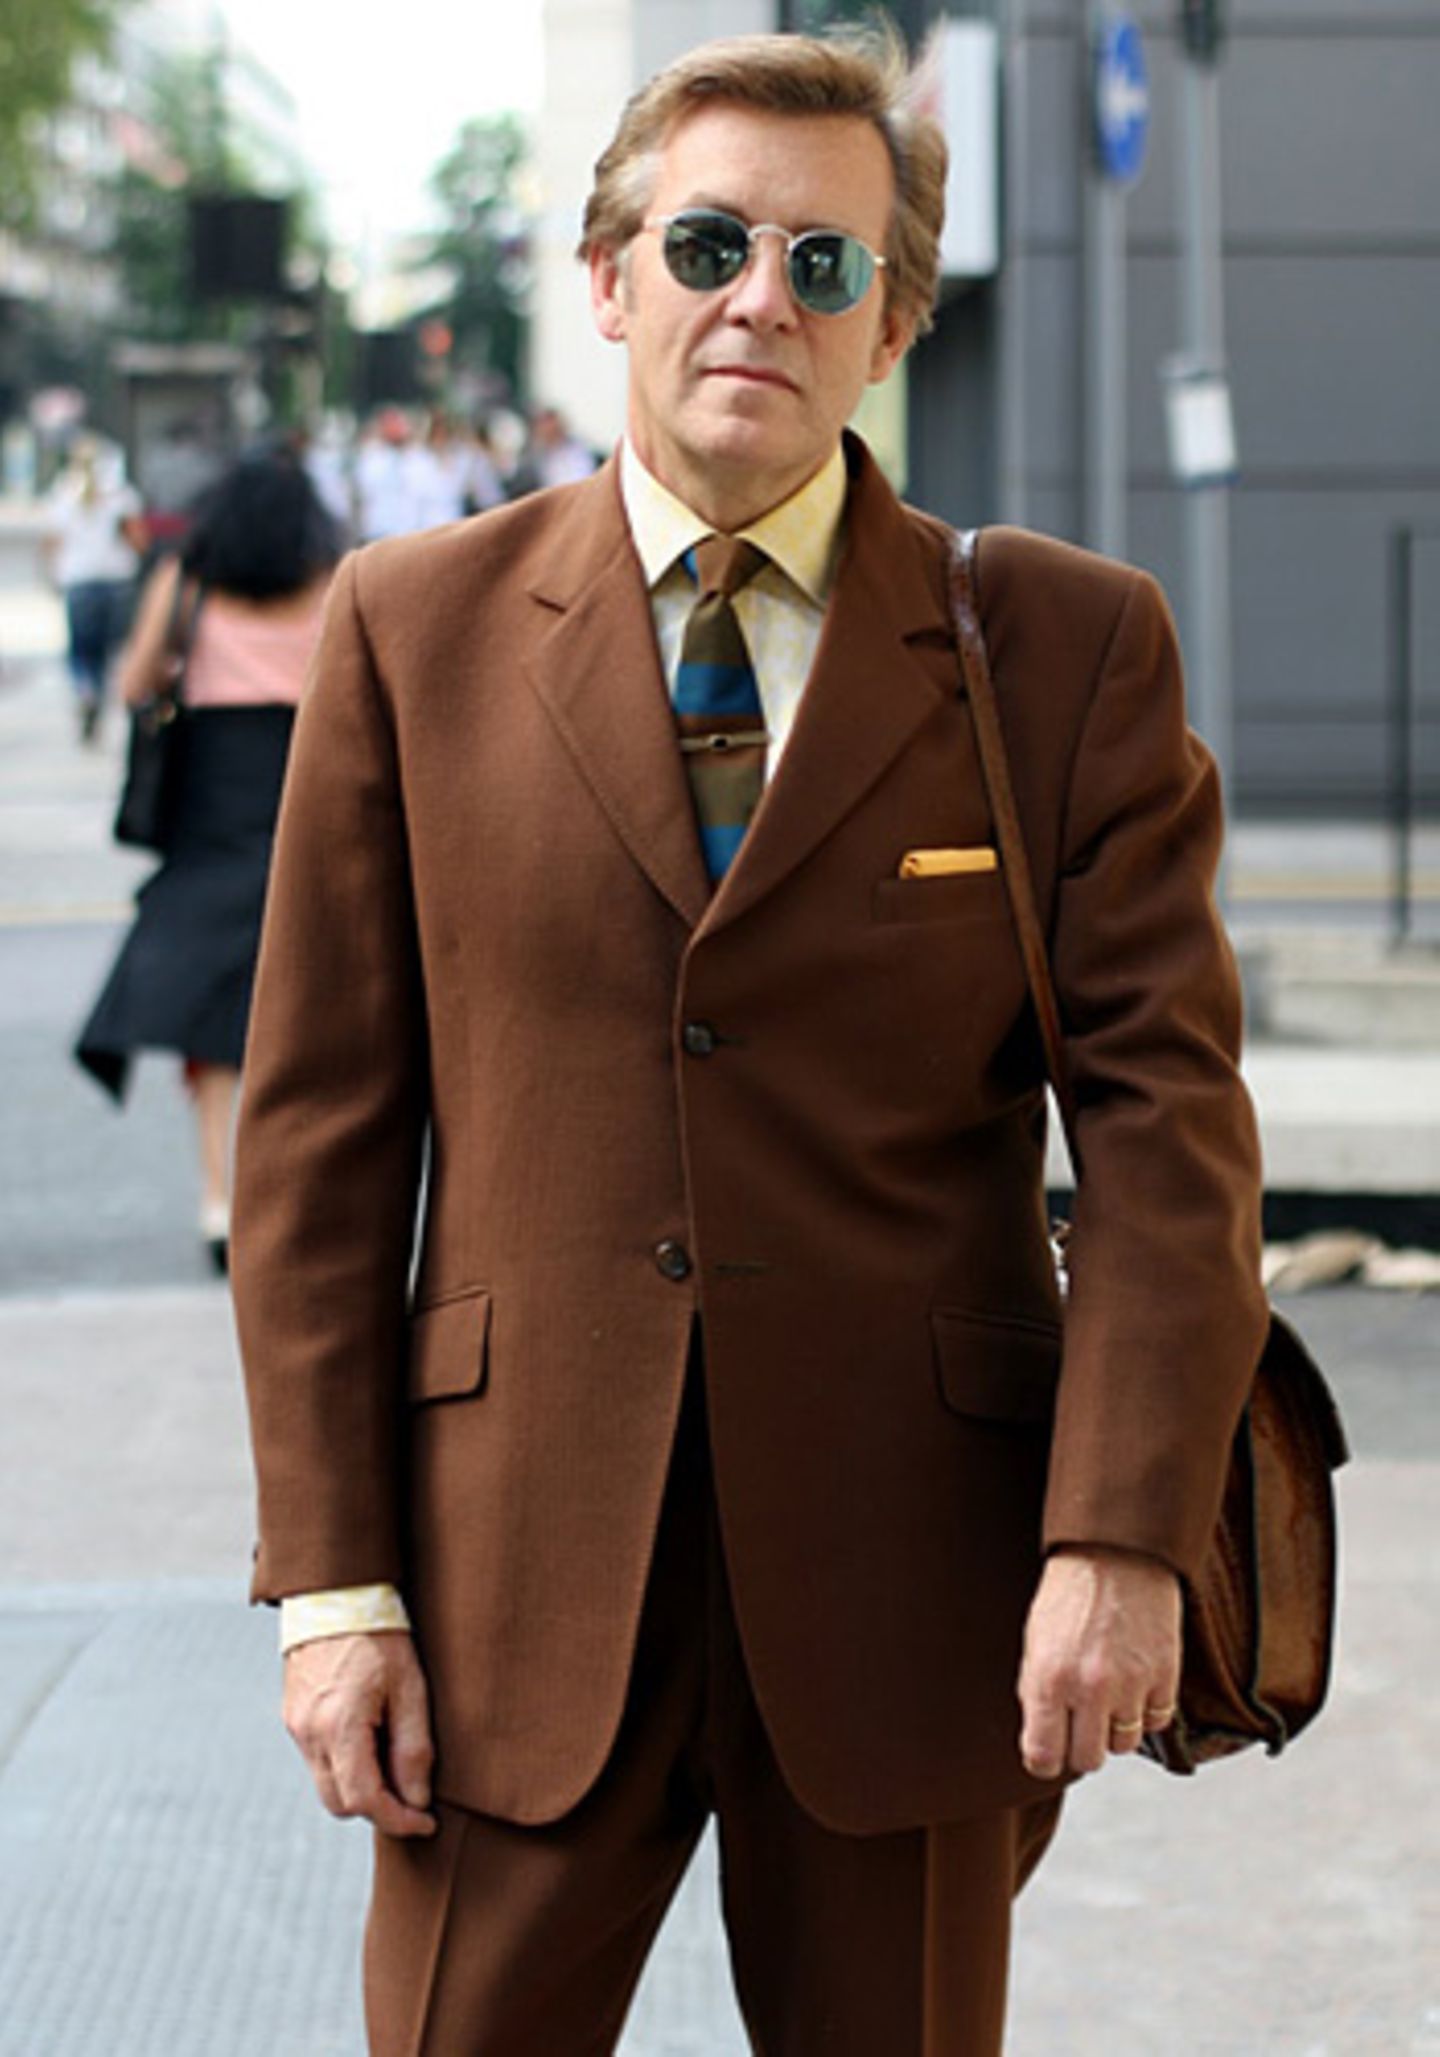 Anzug, Hemd, Krawatte, Tasche - bei diesem lässigen Londoner ist wirklich alles Vintage. Mit seinem Outfit könnte er auch direkt in die 70er-Jahre-Serie "Die Straßen von San Francisco" einsteigen - zu dumm, dass die nicht mehr gedreht wird.